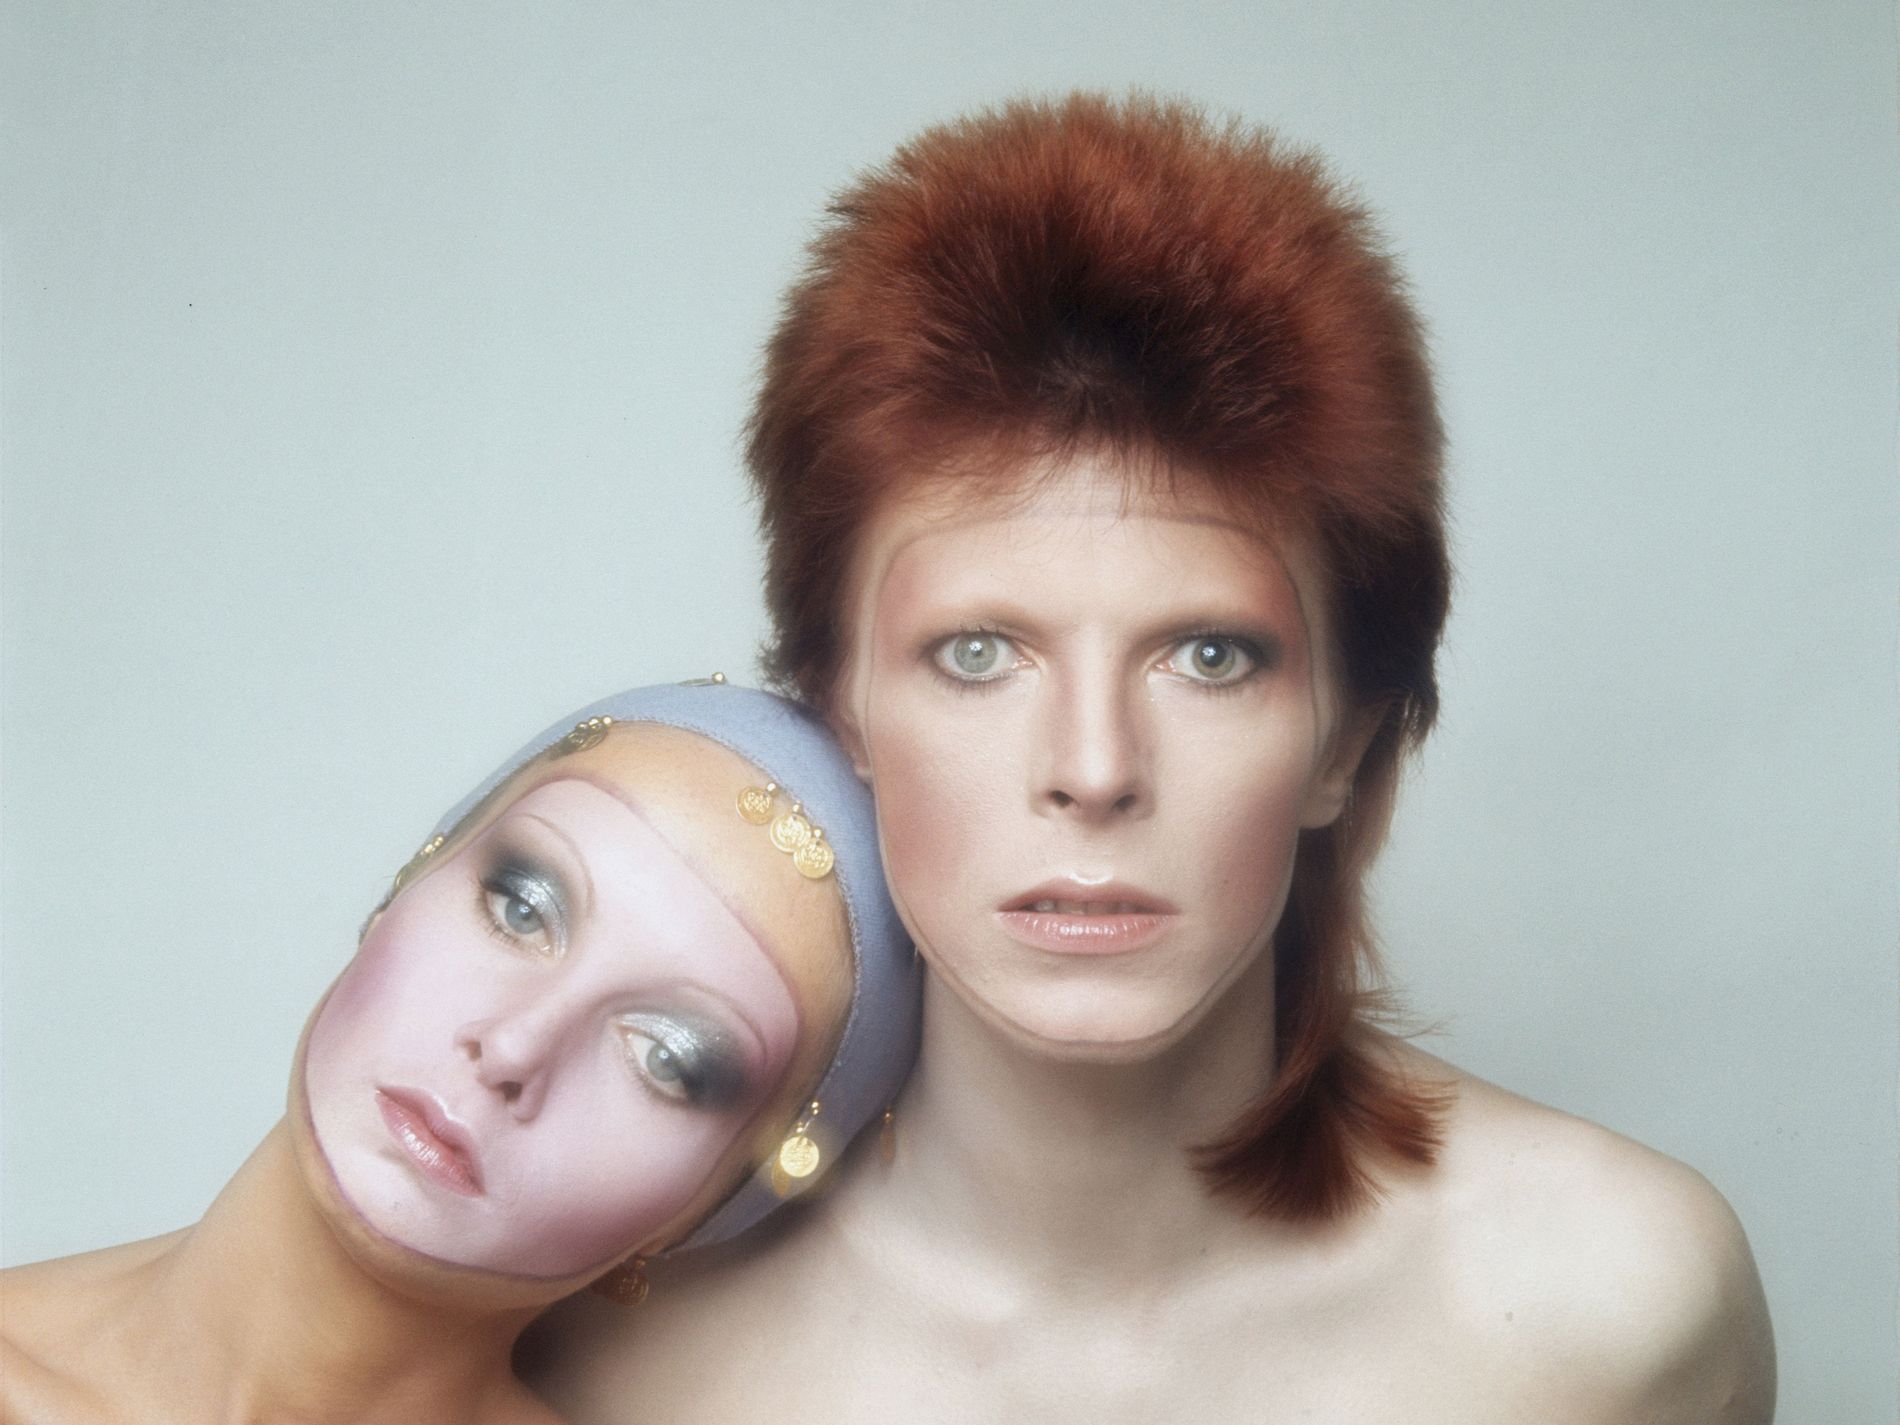 David Bowie in makeup